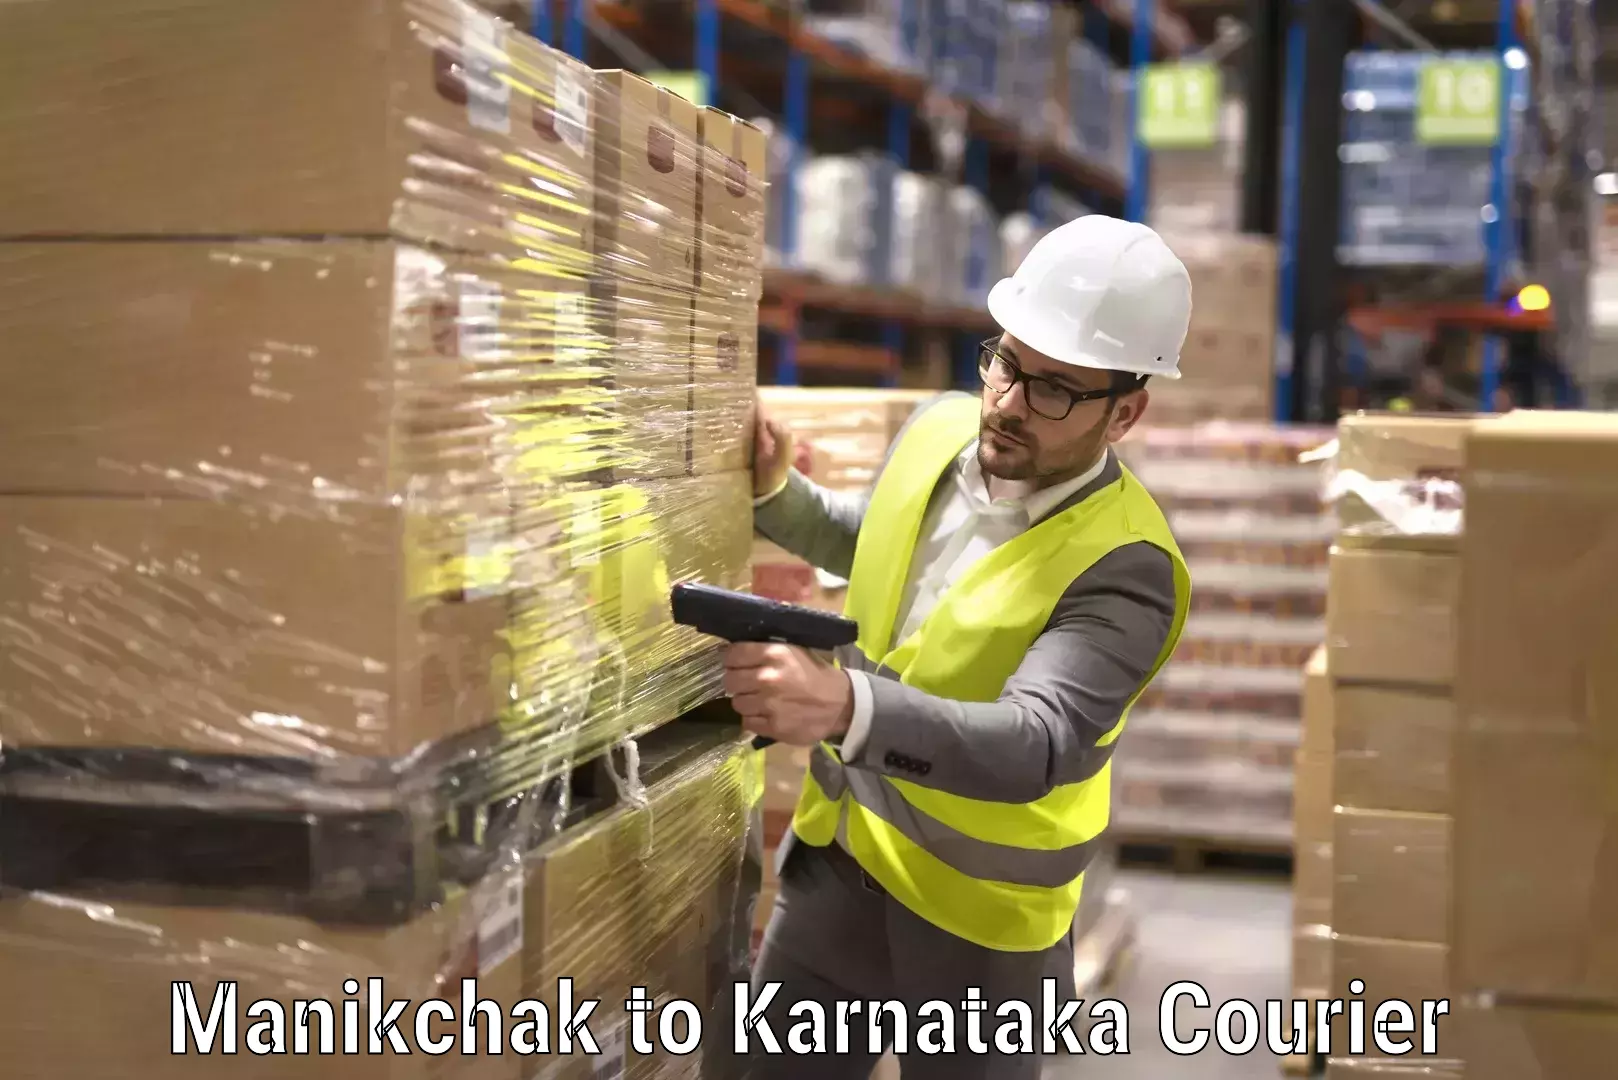 Professional furniture movers in Manikchak to Karnataka